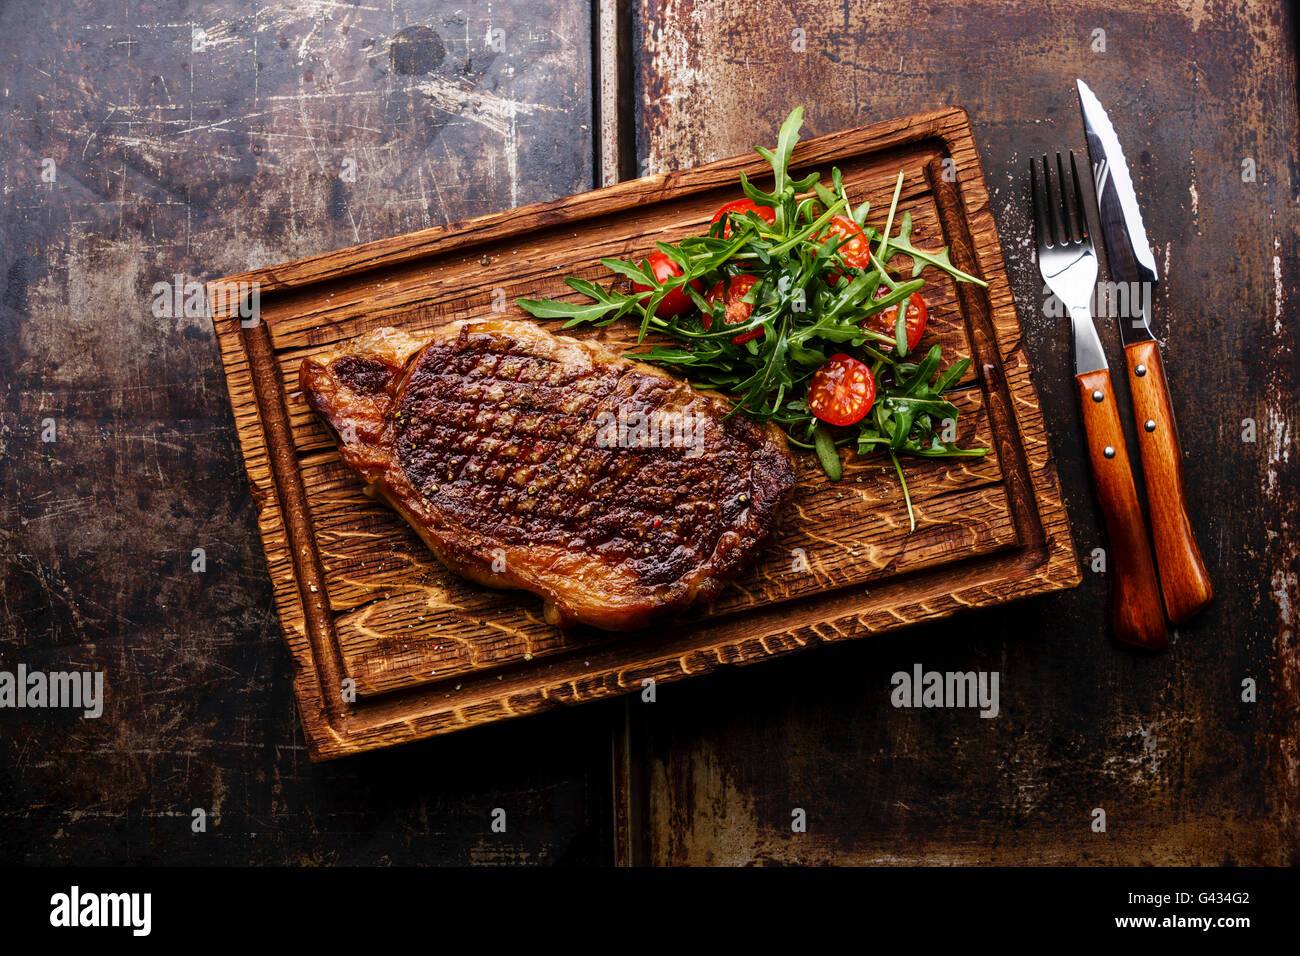 Alla brace bistecca di controfiletto con insalata e una forchetta e coltello sul tagliere su sfondo scuro Foto Stock